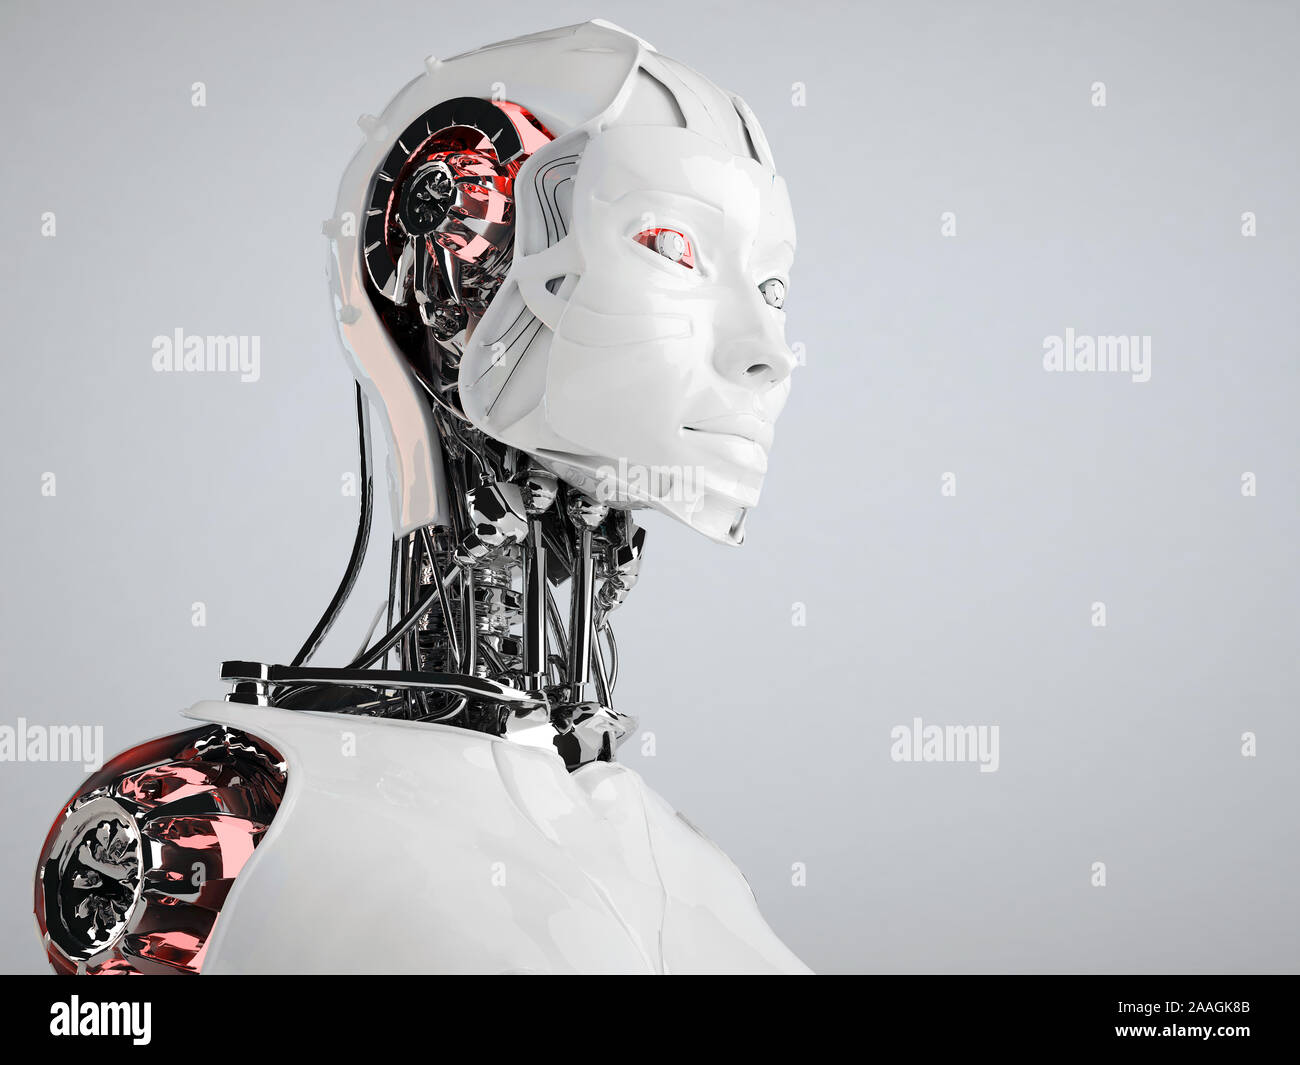 Ragazza robot immagini e fotografie stock ad alta risoluzione - Alamy